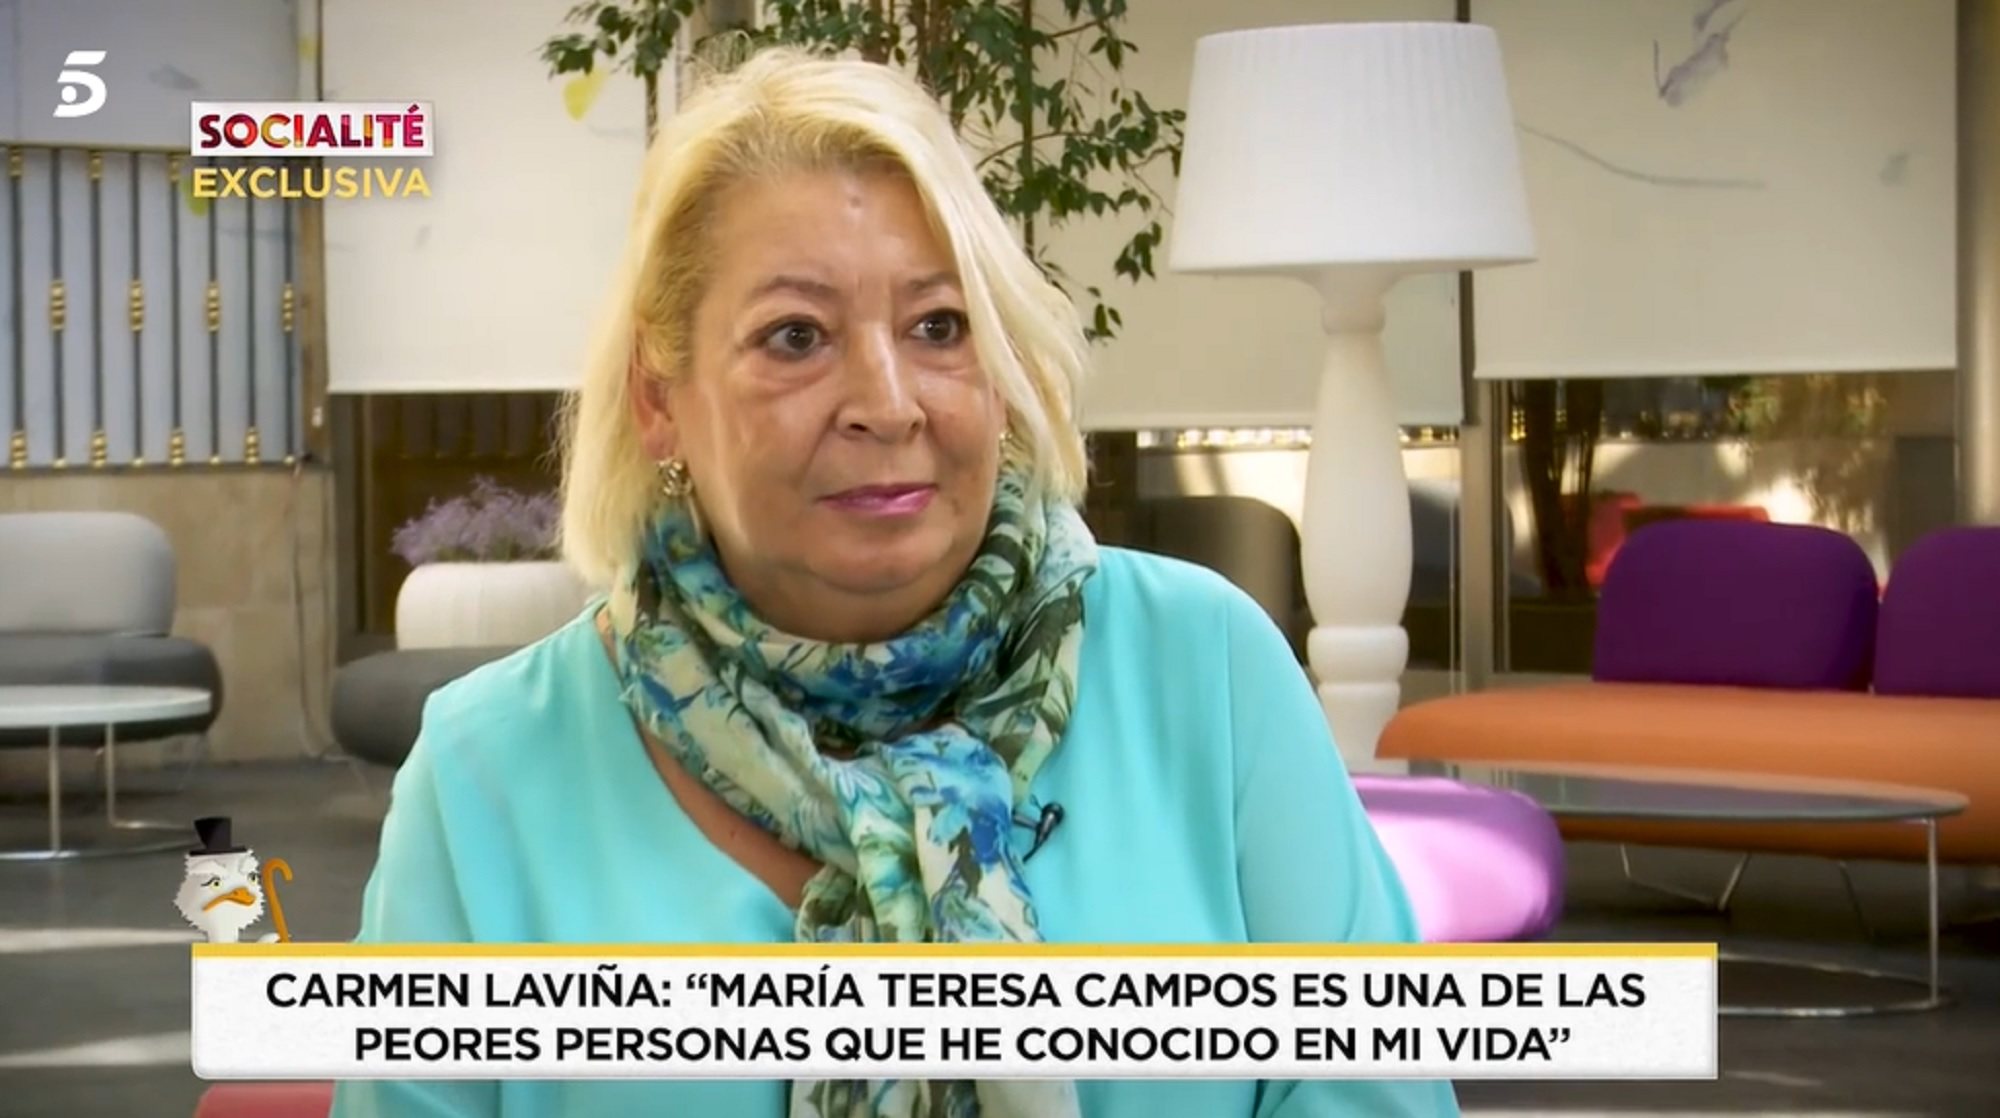 Carmen Laviña, excompañera de María Teresa Campos, la critica duramente en 'Socialité'